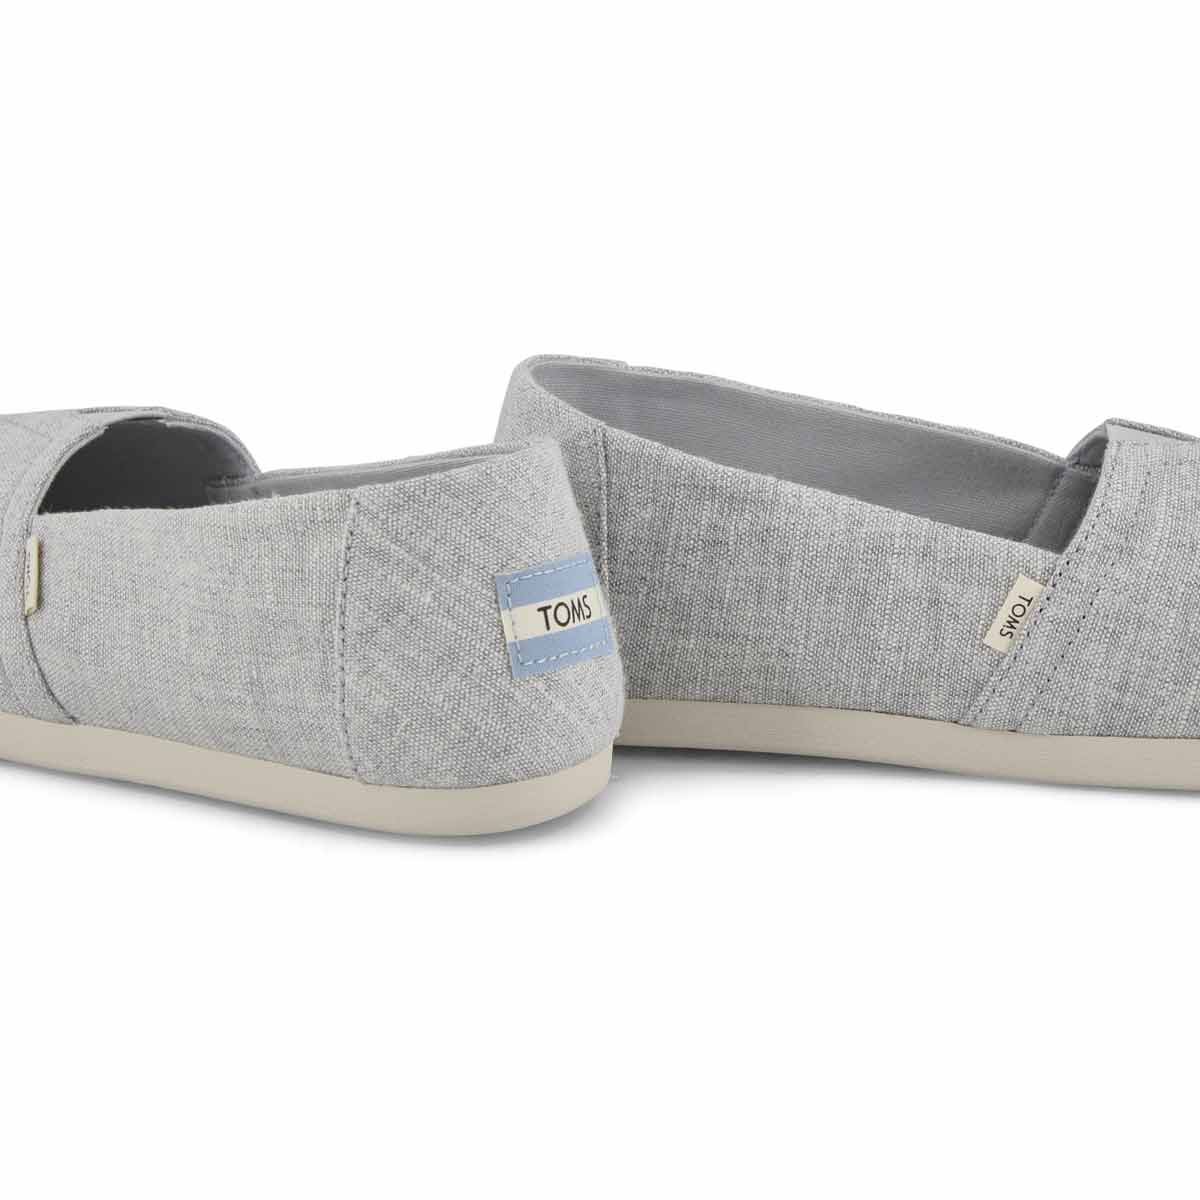 Women's CLASSIC ALPARGATA drizzle grey loafers